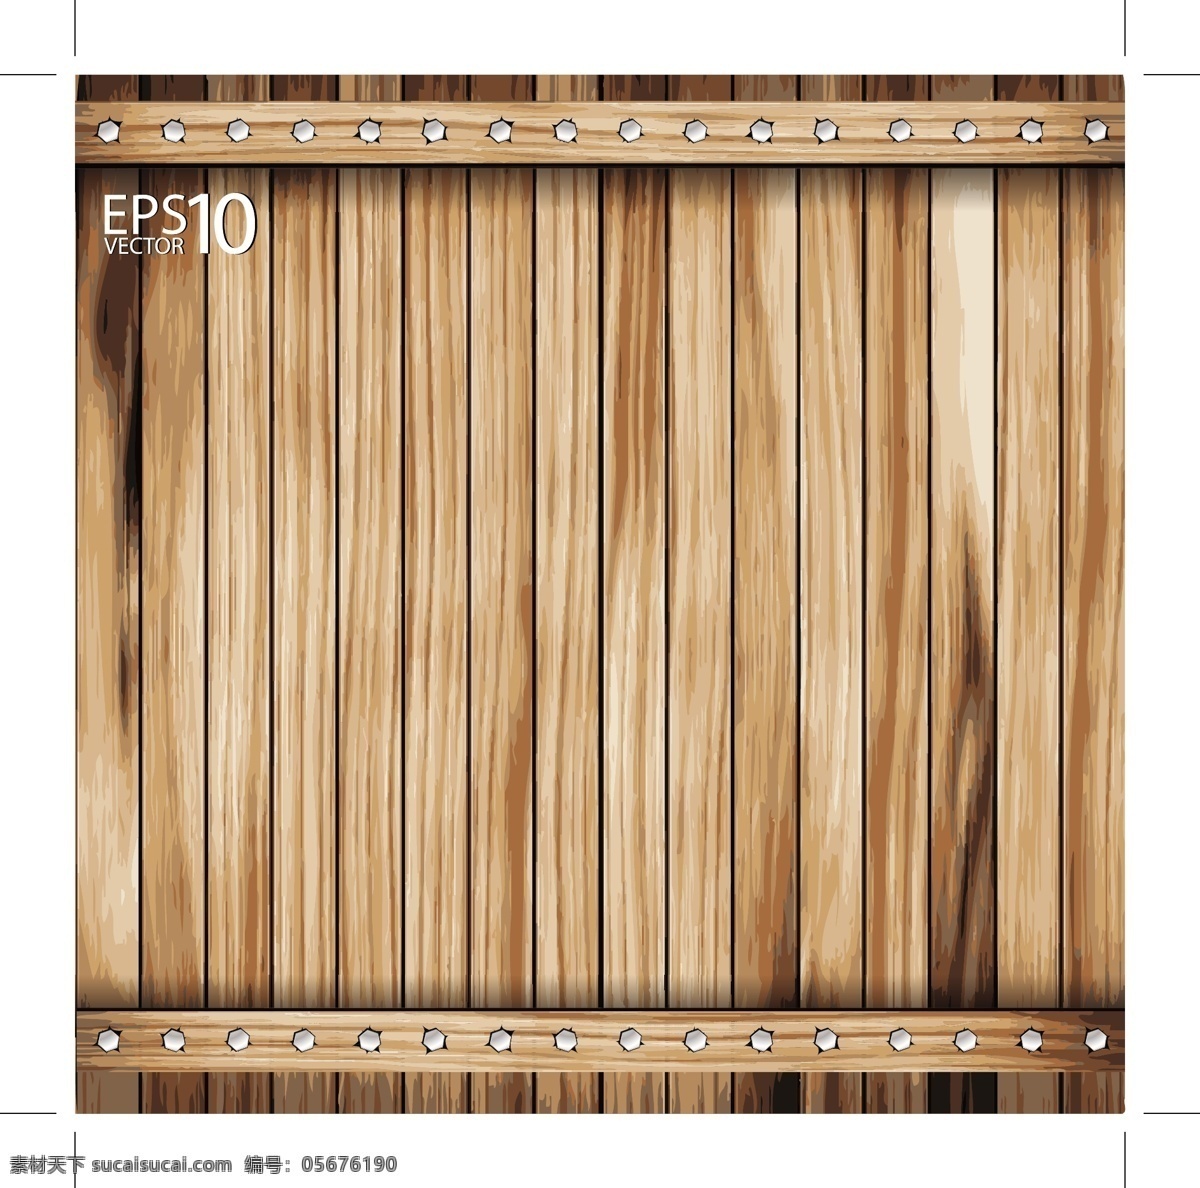 木板 木纹 木地板 彩色木板 木质纹理 wood 手绘木板 逼真木板 背景底纹 矢量 底纹边框